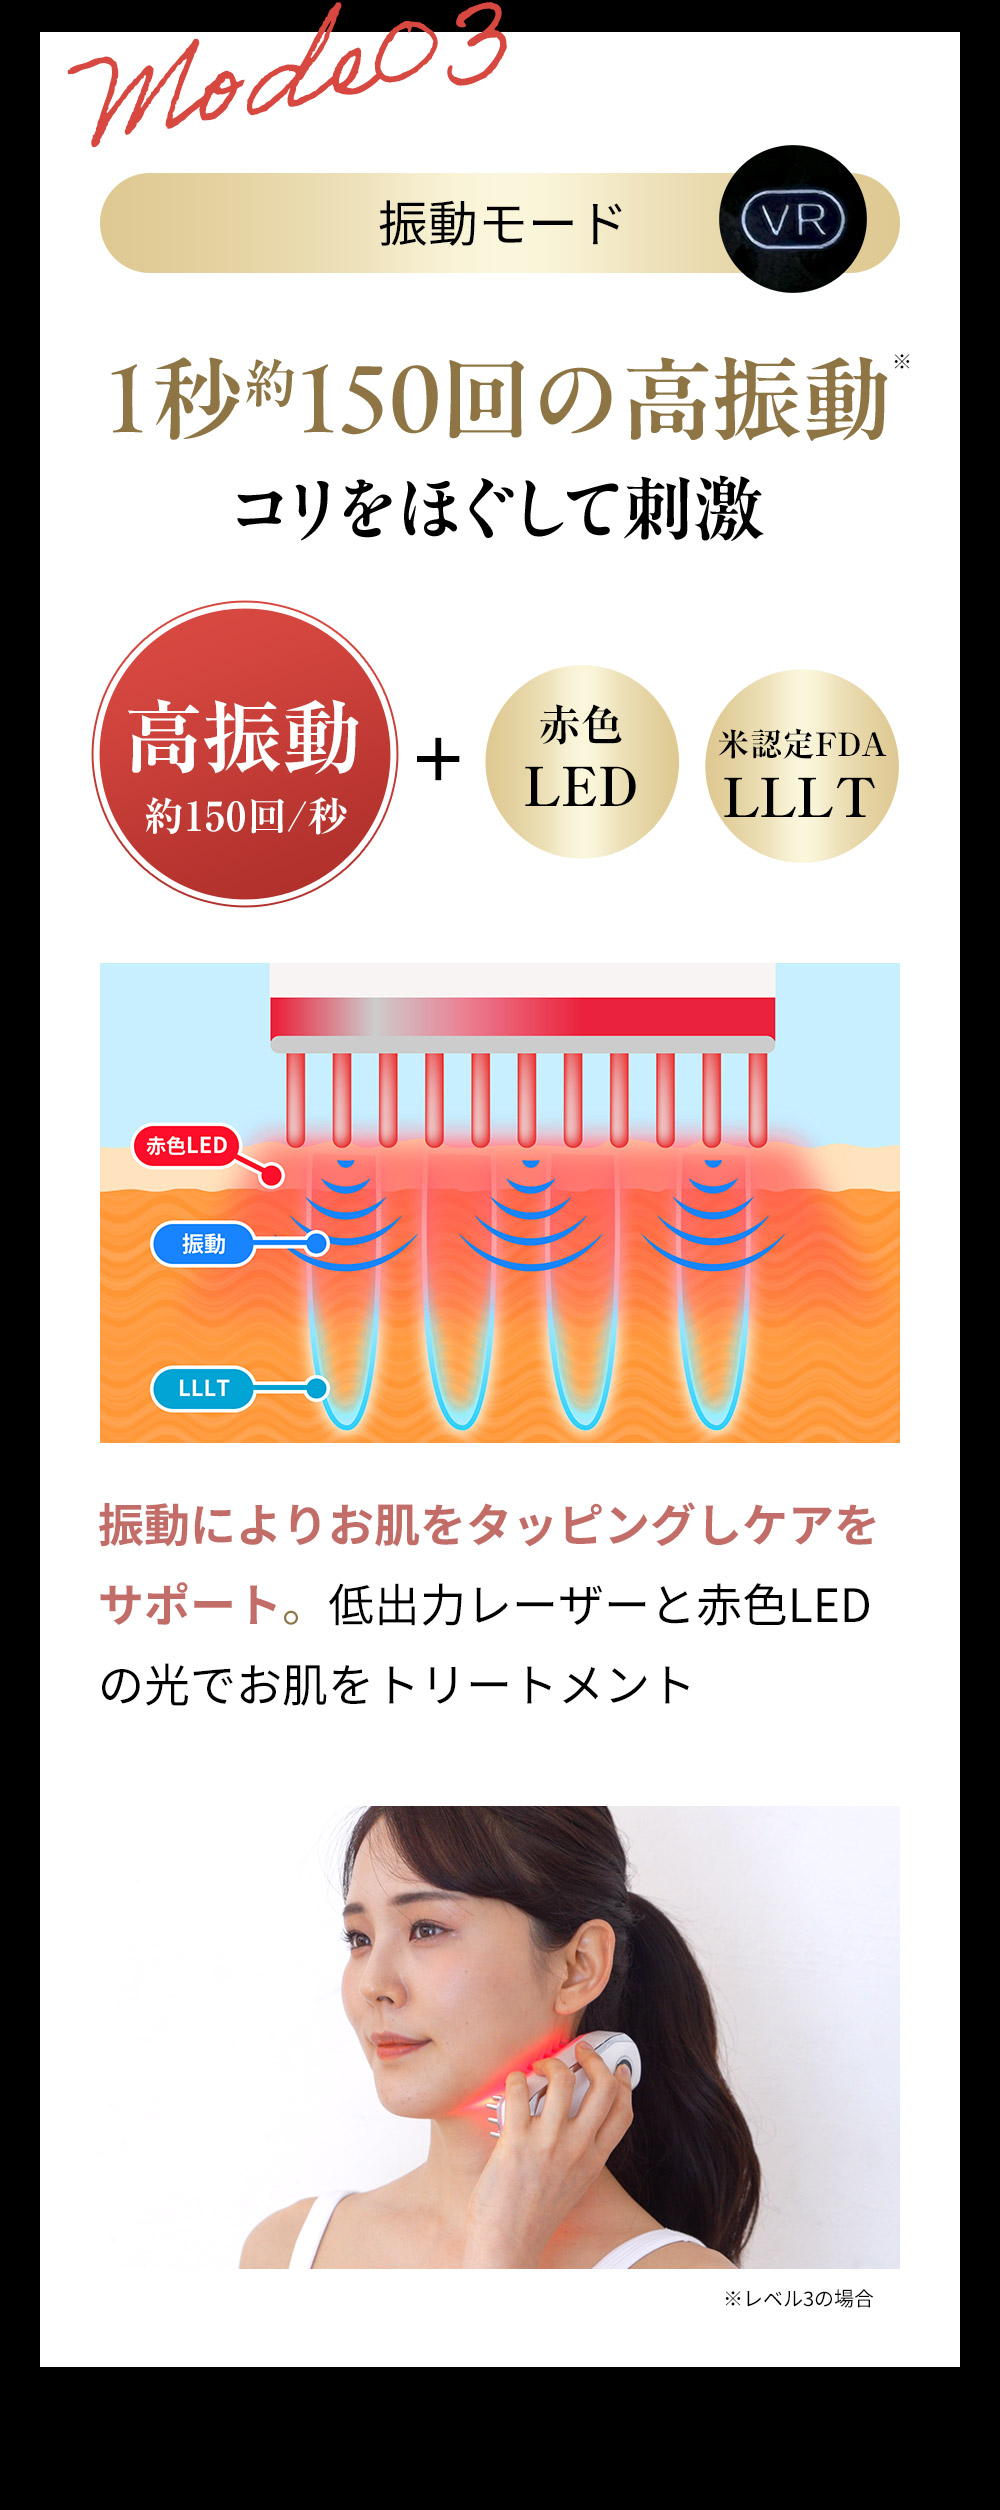 振動モード：振動によりお肌をタッピングしケアをサポート。低出力レーザーと赤色LEDの光でお肌をトリートメント